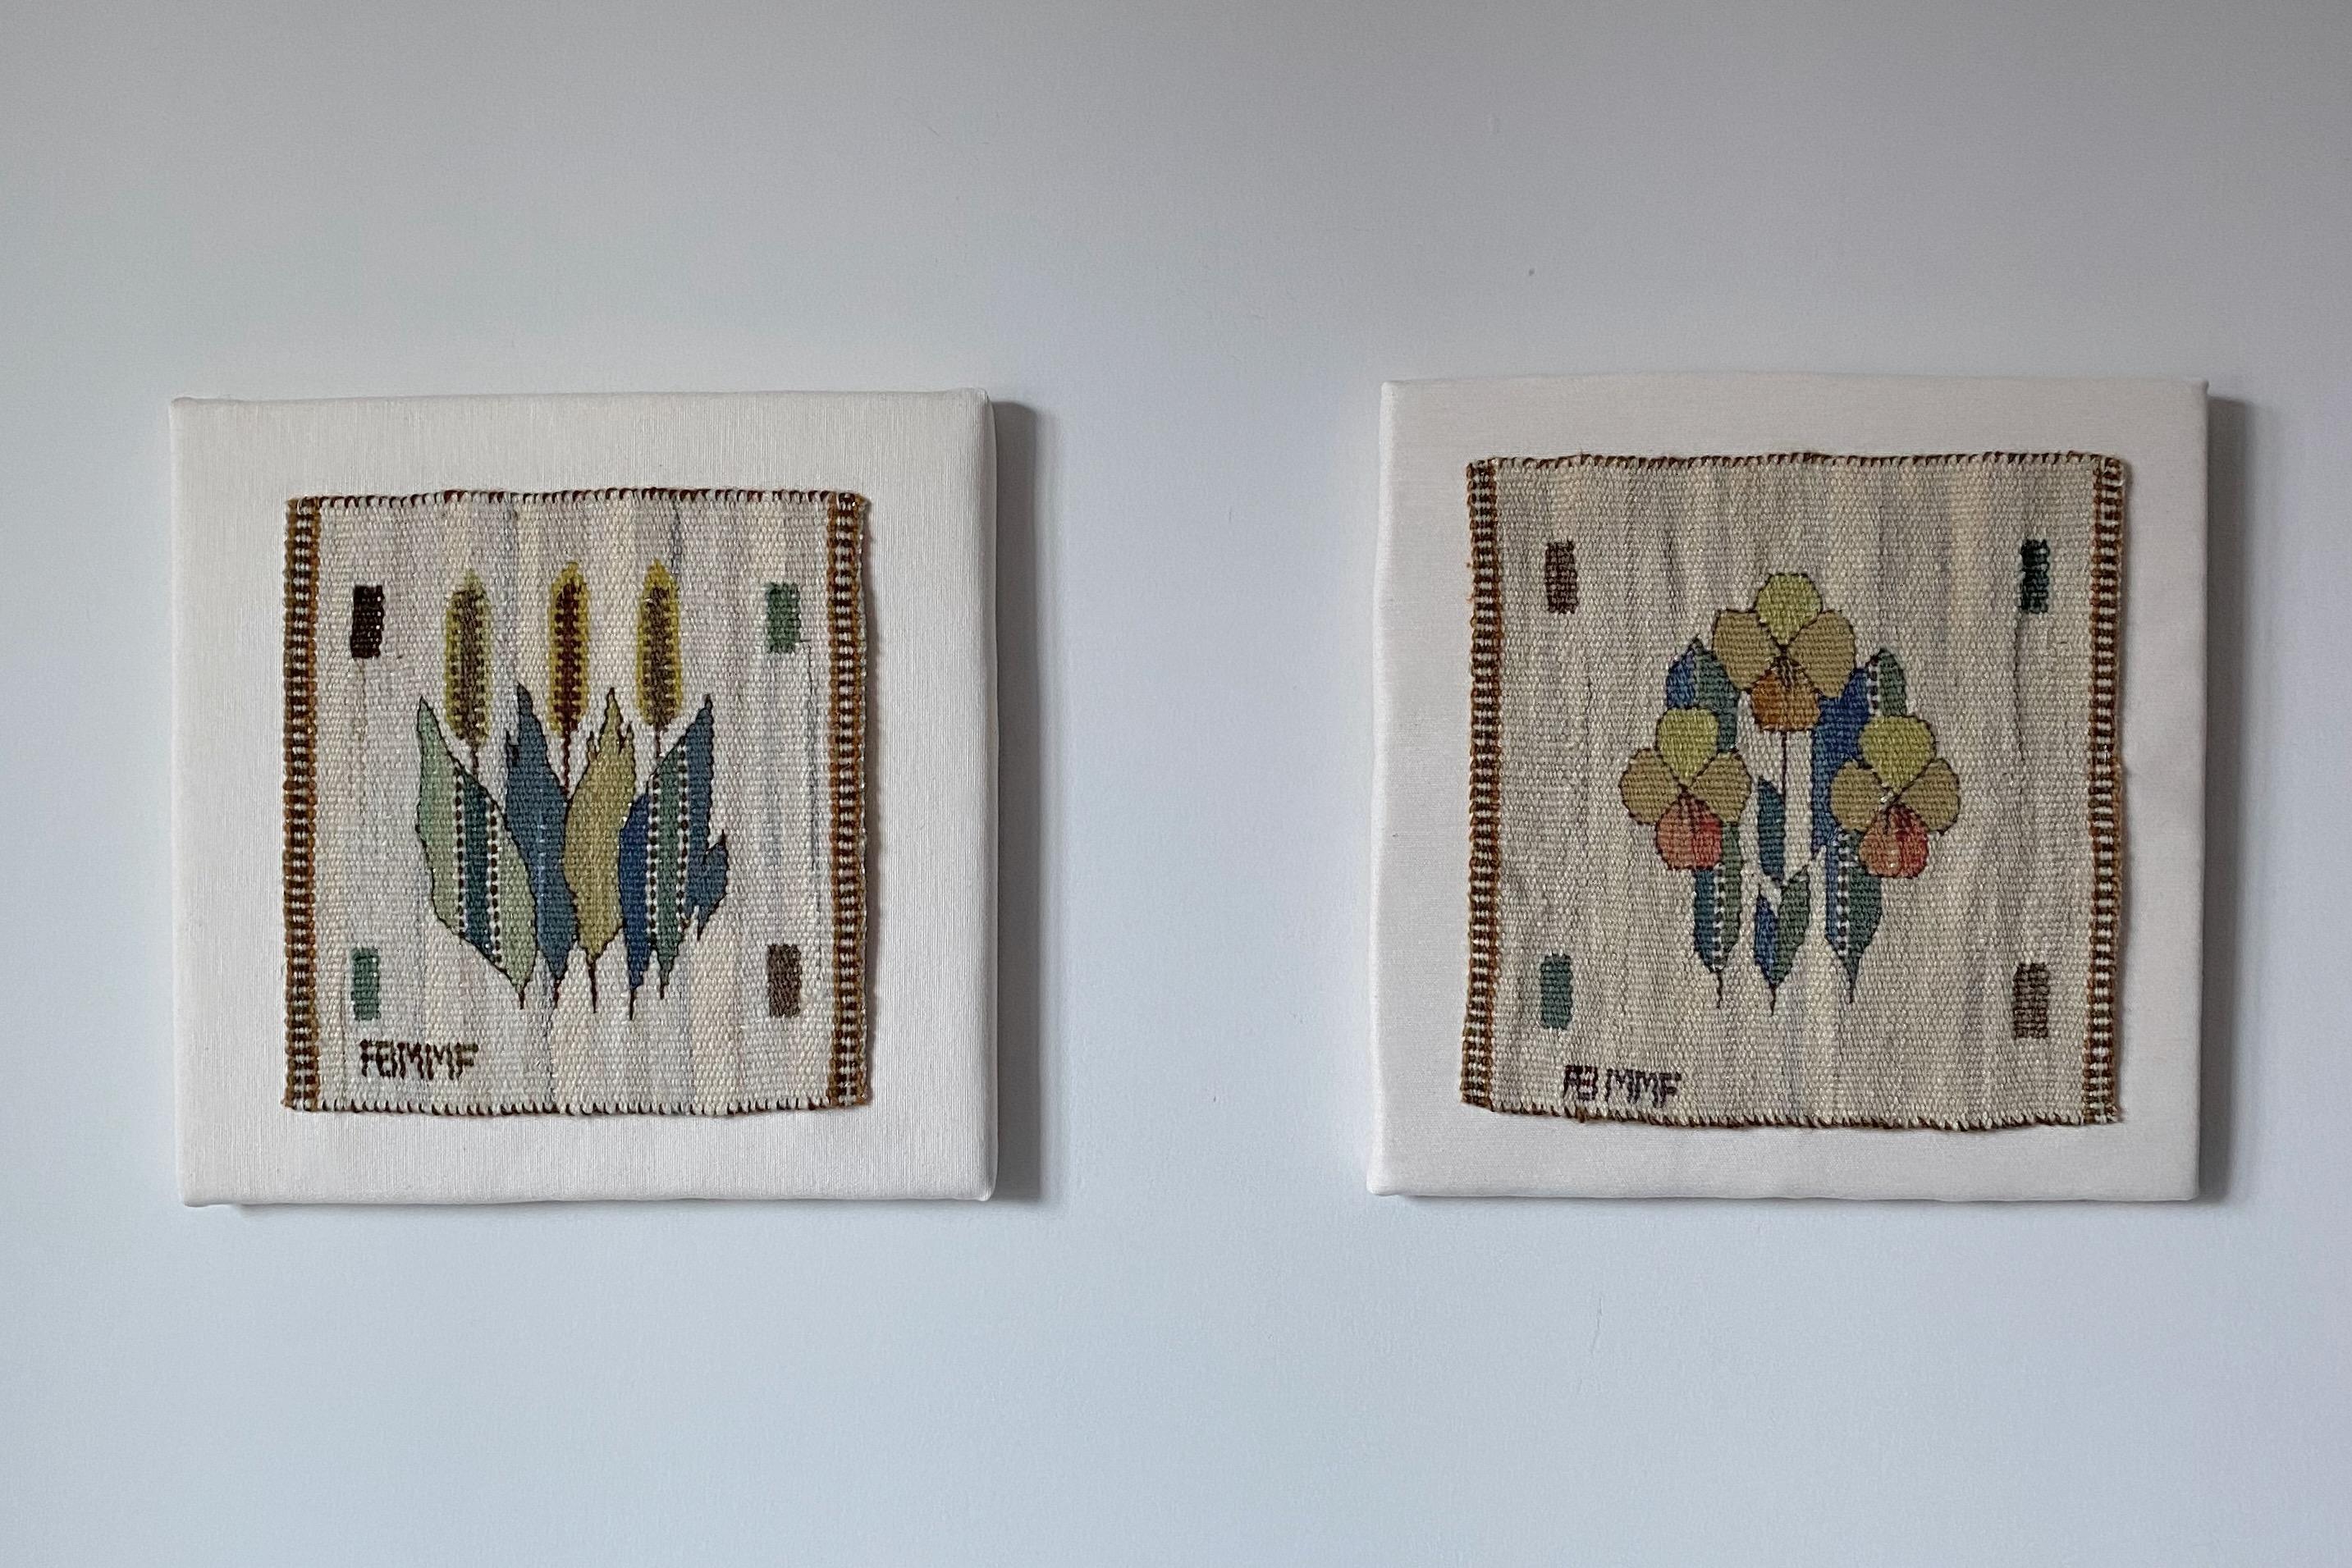 Hand-Woven Blomlapp Tapestry by Märta Måås Fjetterström